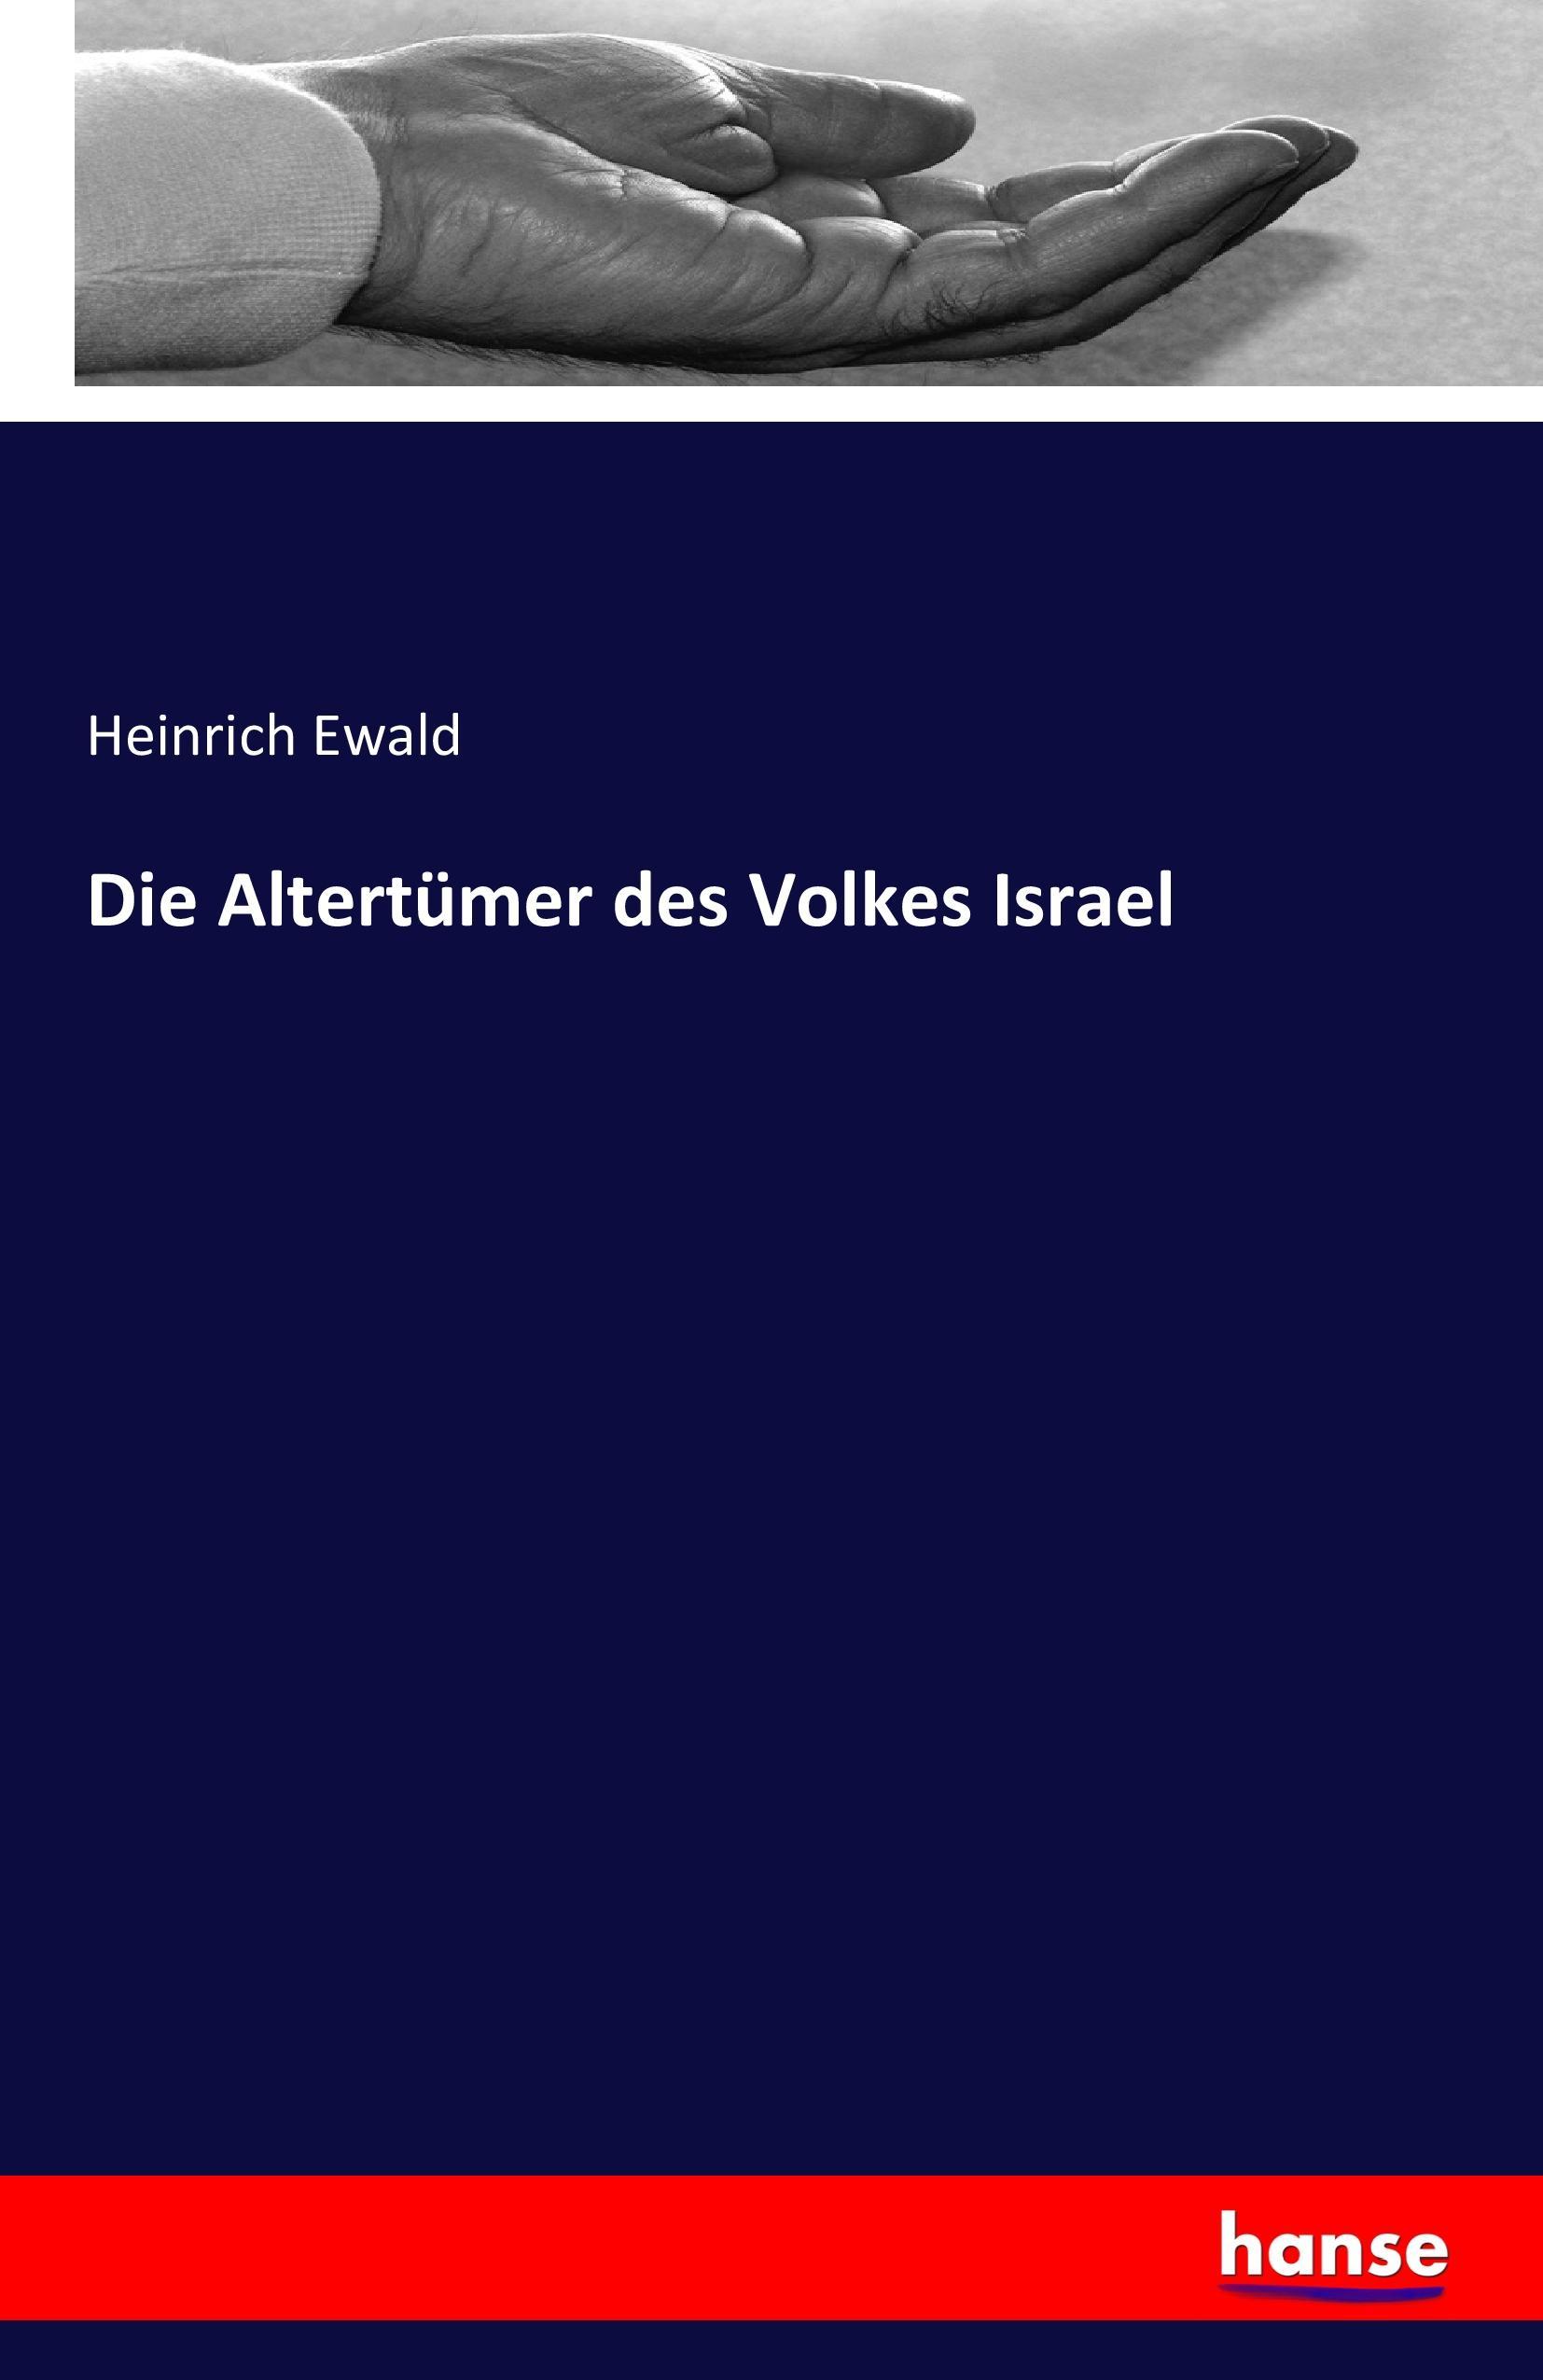 Die Altertuemer des Volkes Israel - Ewald, Heinrich